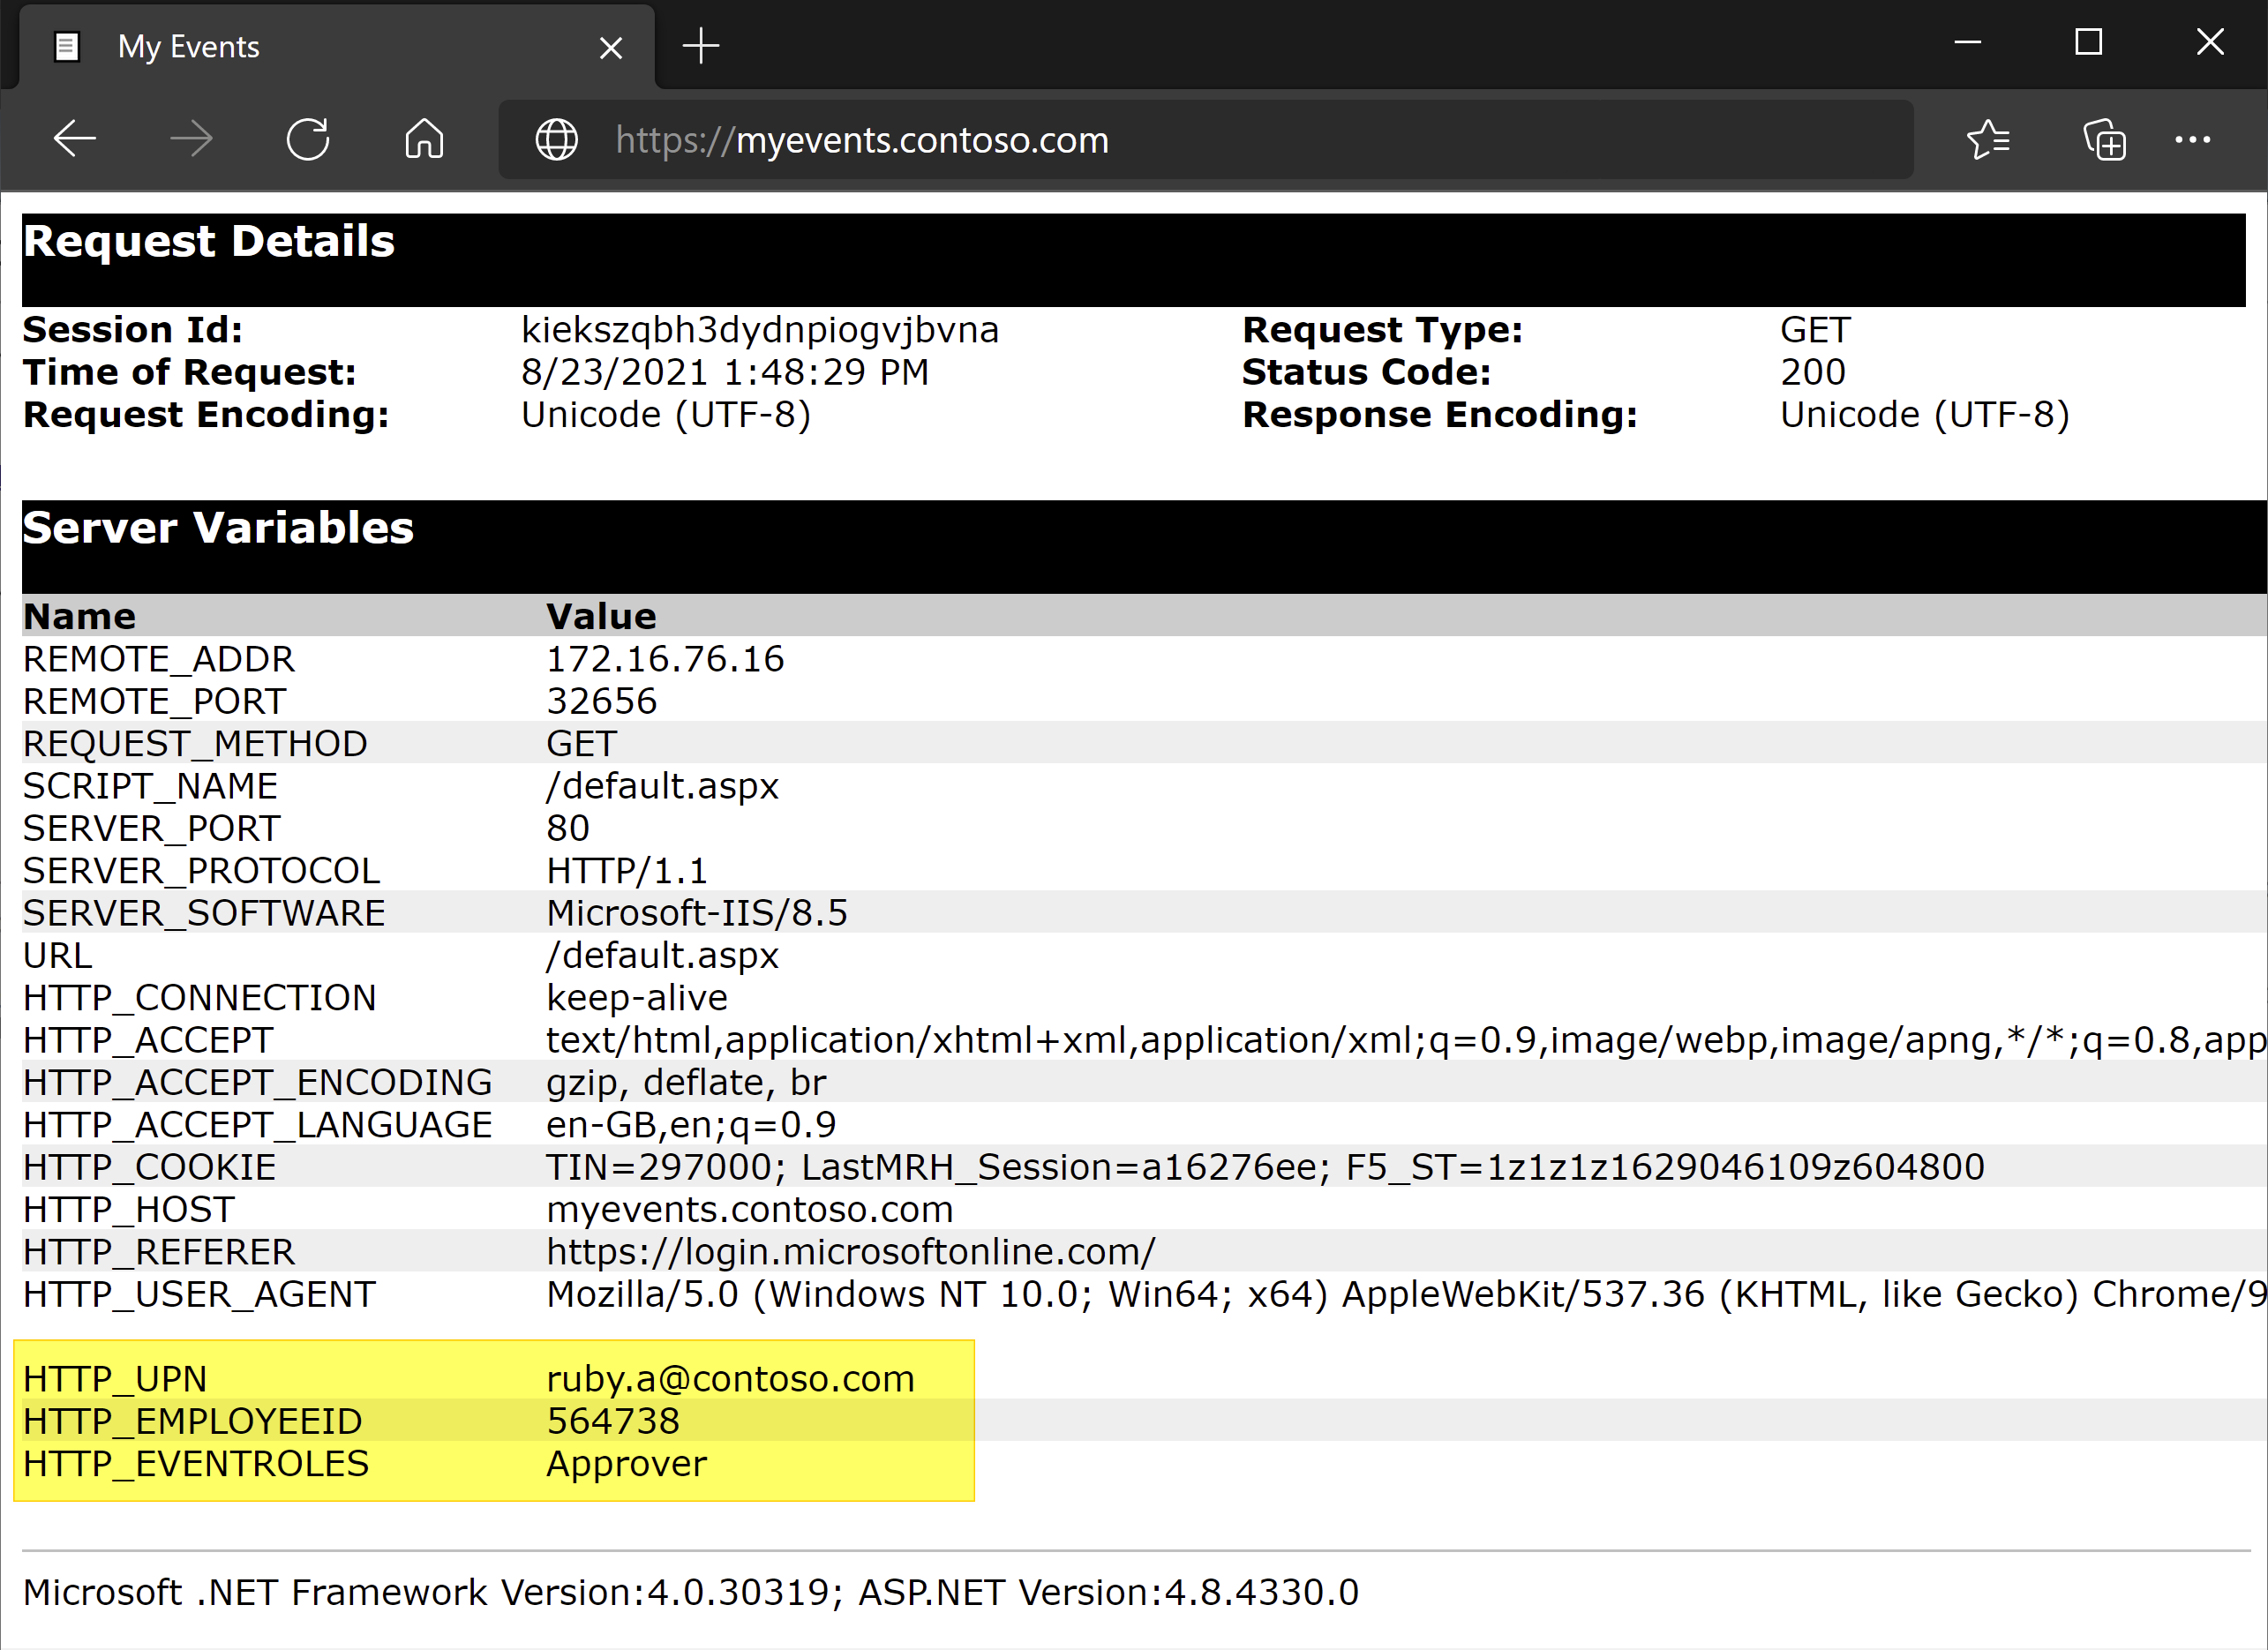 Captura de tela do UPN, ID do funcionário e funções de evento em Variáveis de Servidor.